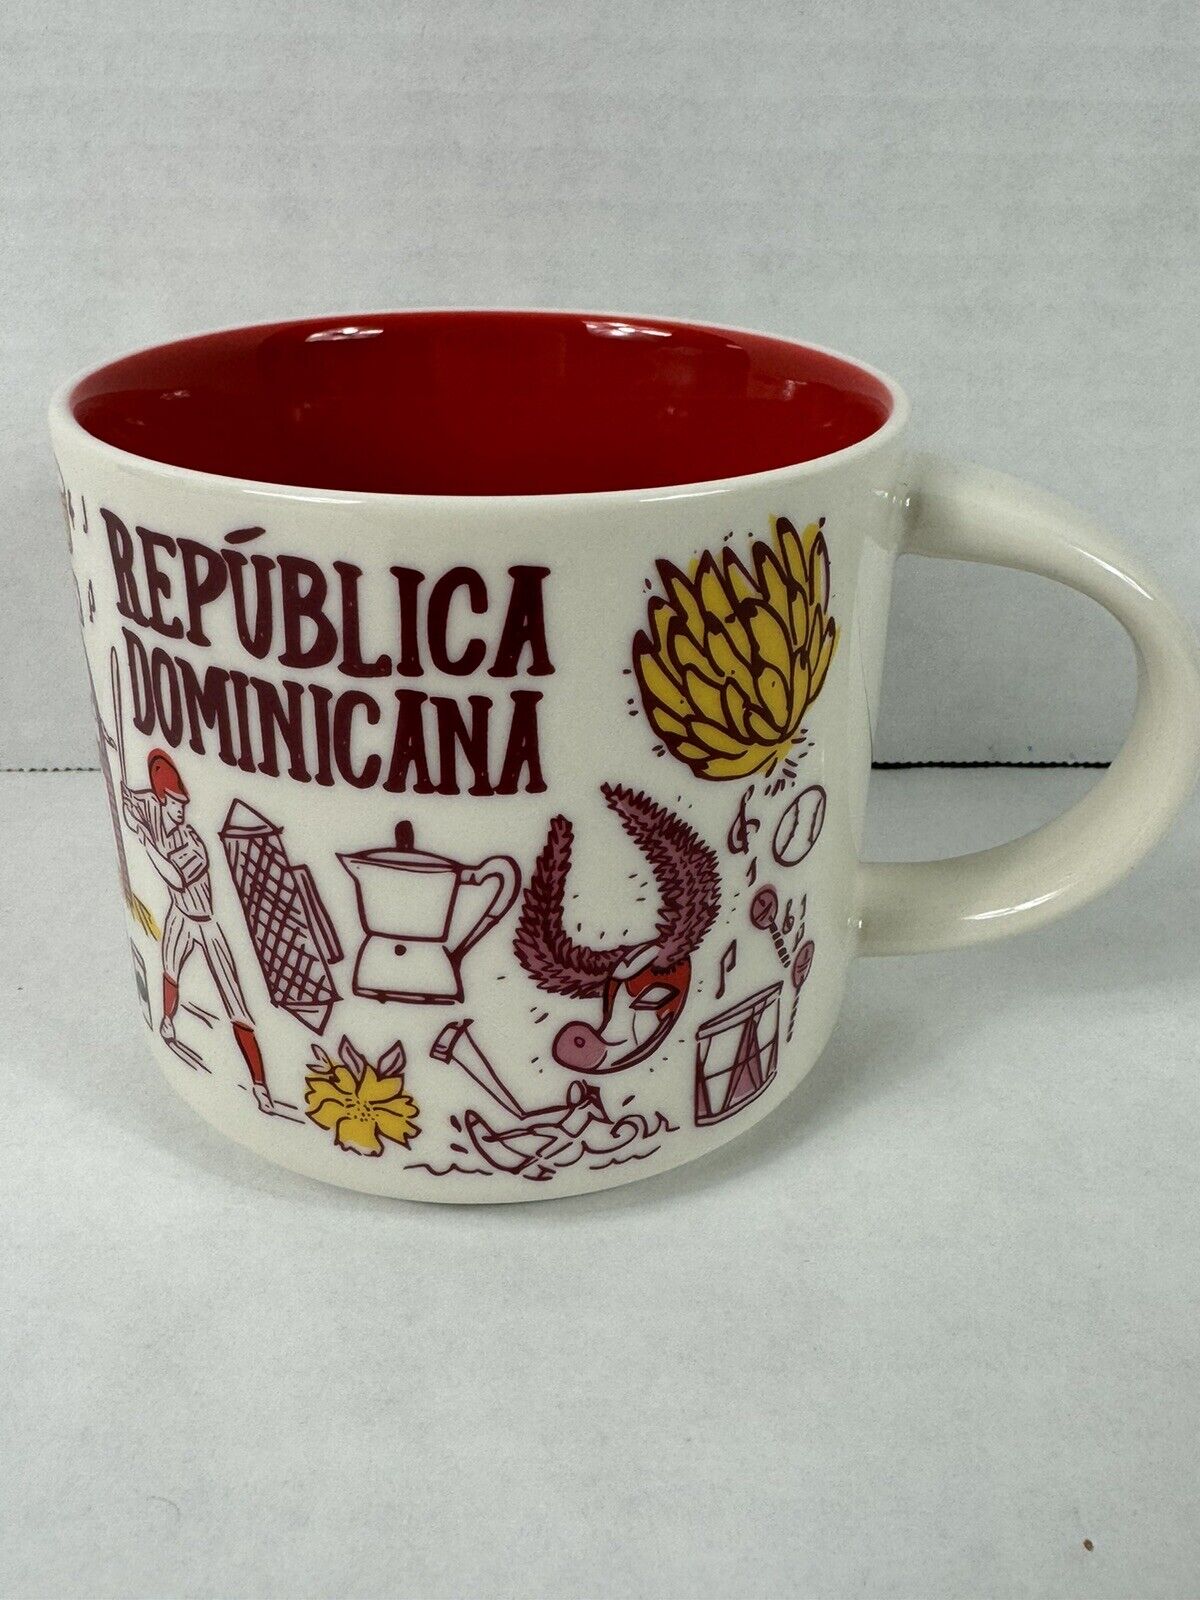 STARBUCKS BEEN THERE COFFEE MUG - Republica Dominicana (DOMINICAN REPUBLIC) 🇩🇴